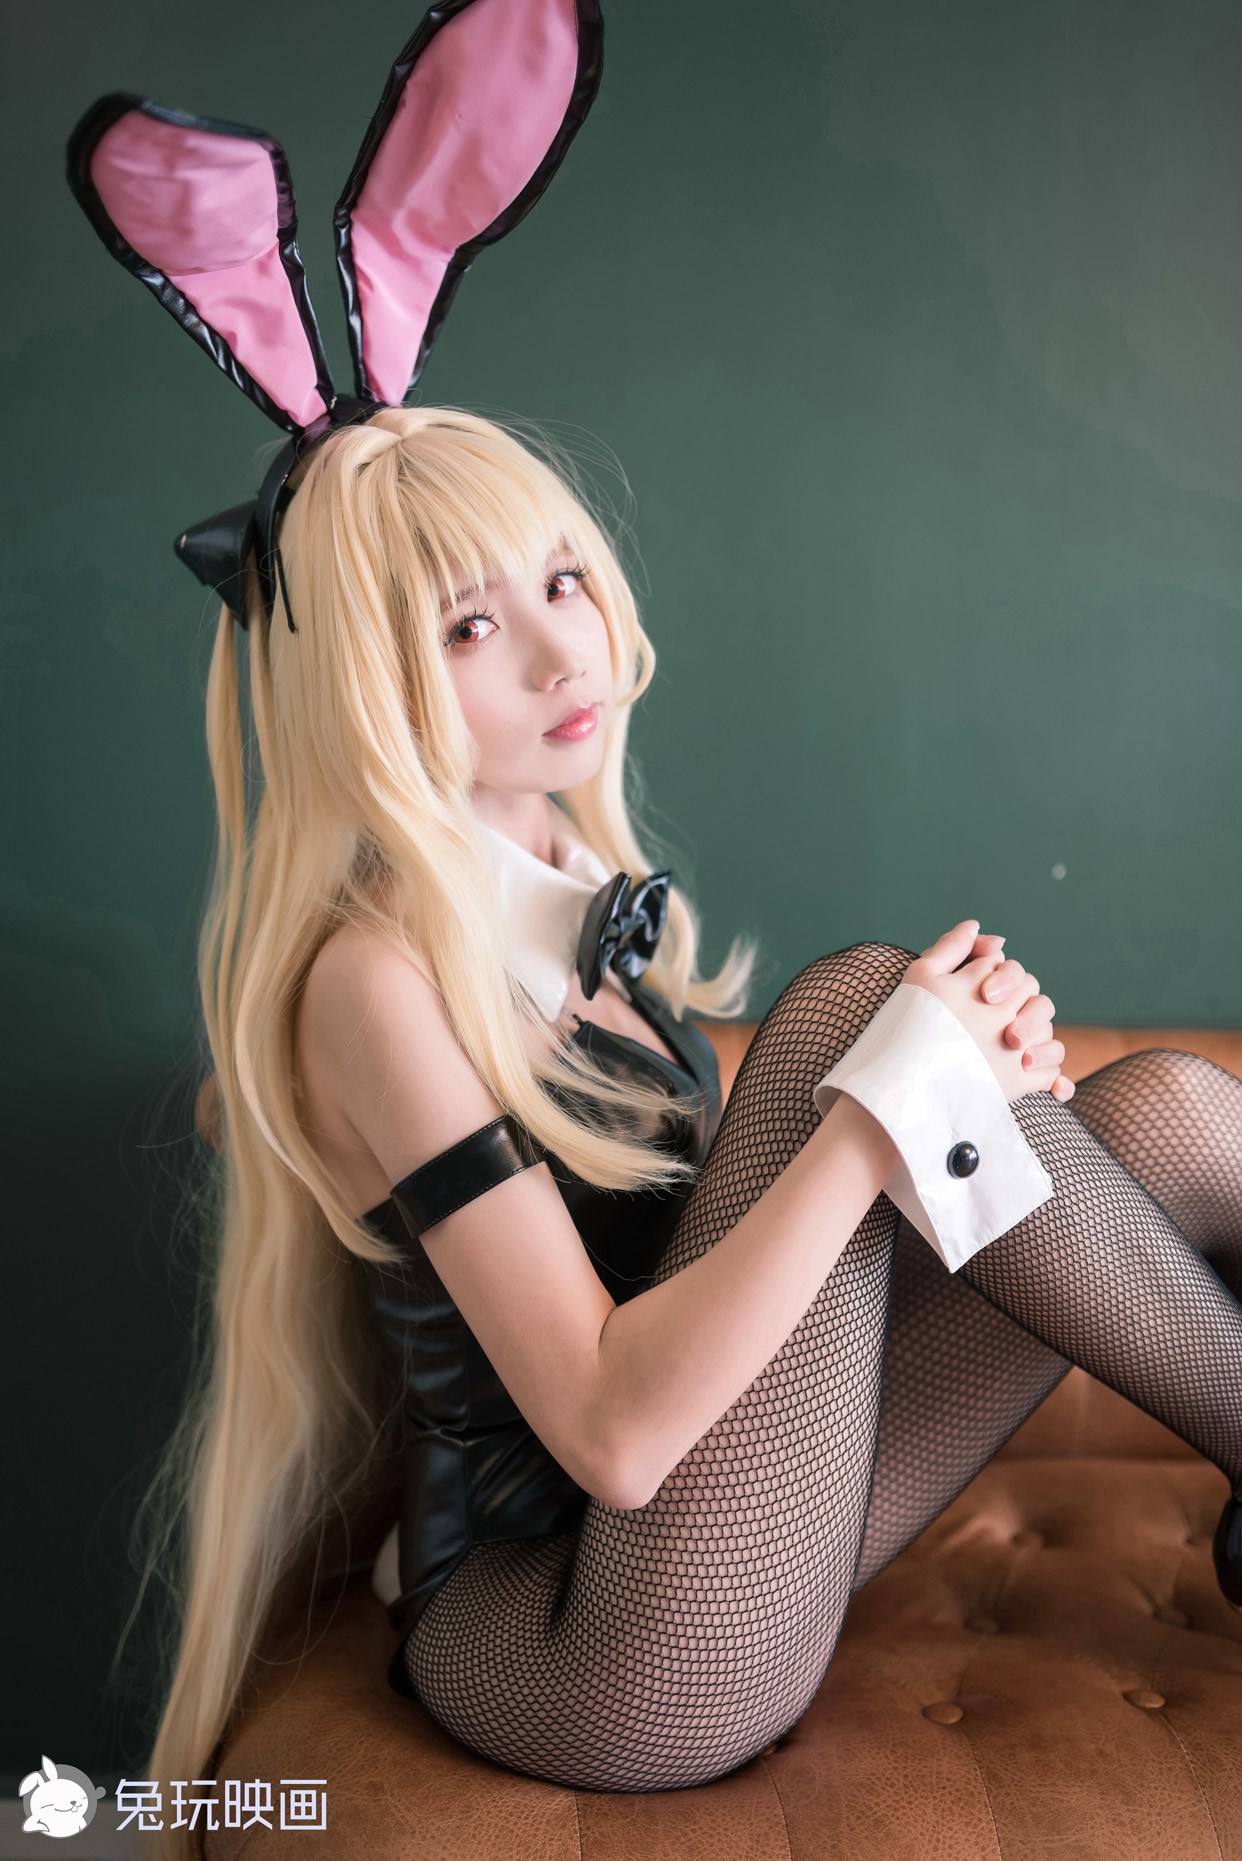 【兔玩映画】兔女郎vol.o8 - 黑兔 兔玩映画 第4张